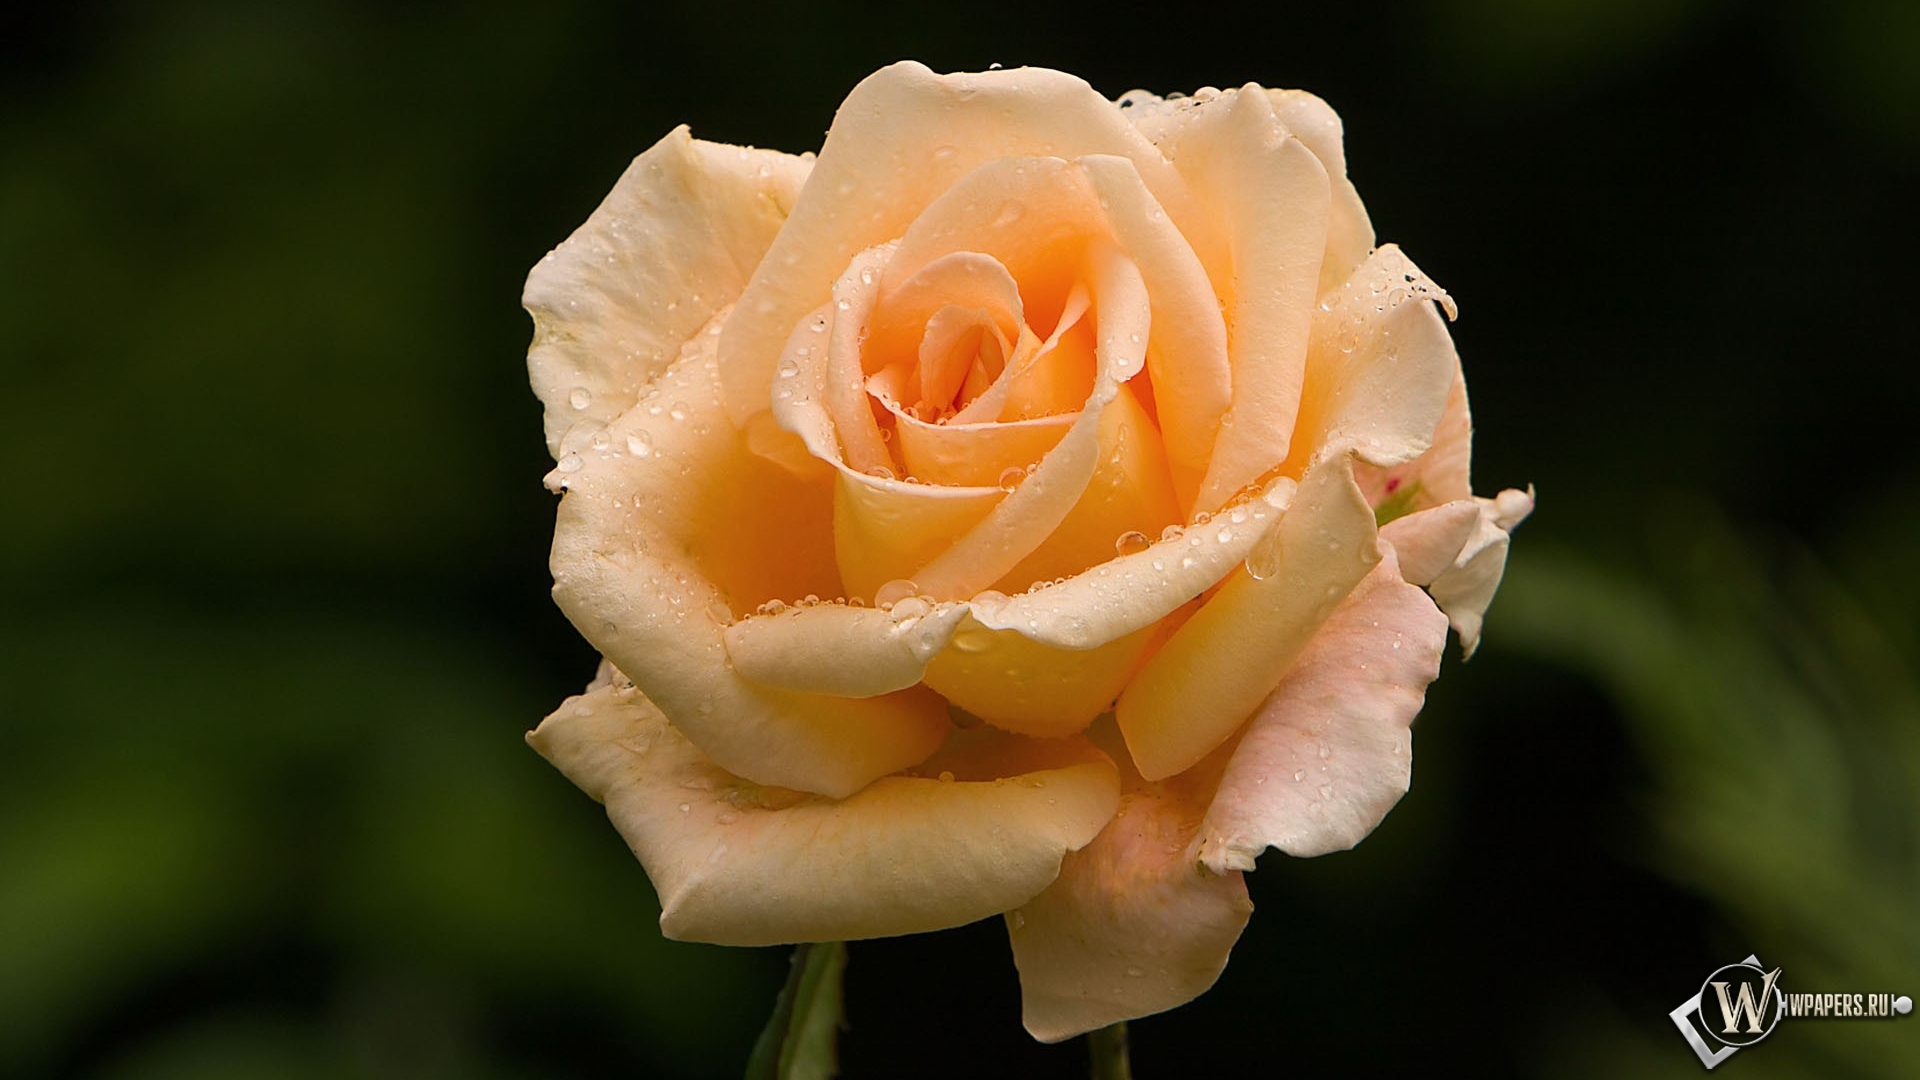 Розовая роза 1920x1080